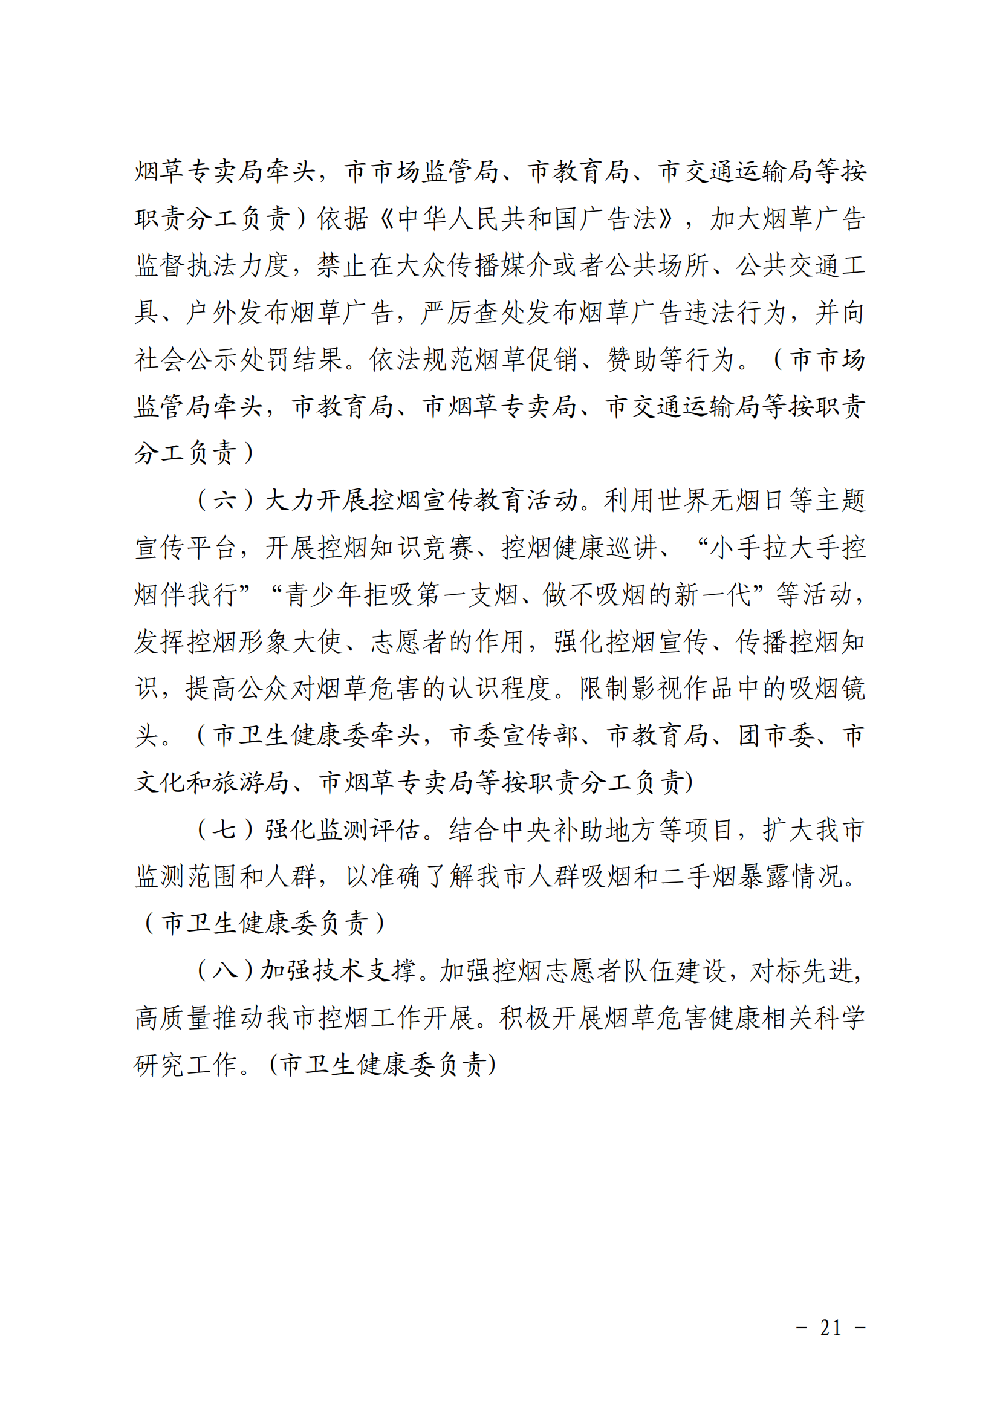 附件3：滨健推委发〔2020〕1号关于印发《健康滨州行动（2020-2022年）》的通知（印刷稿）_20.png